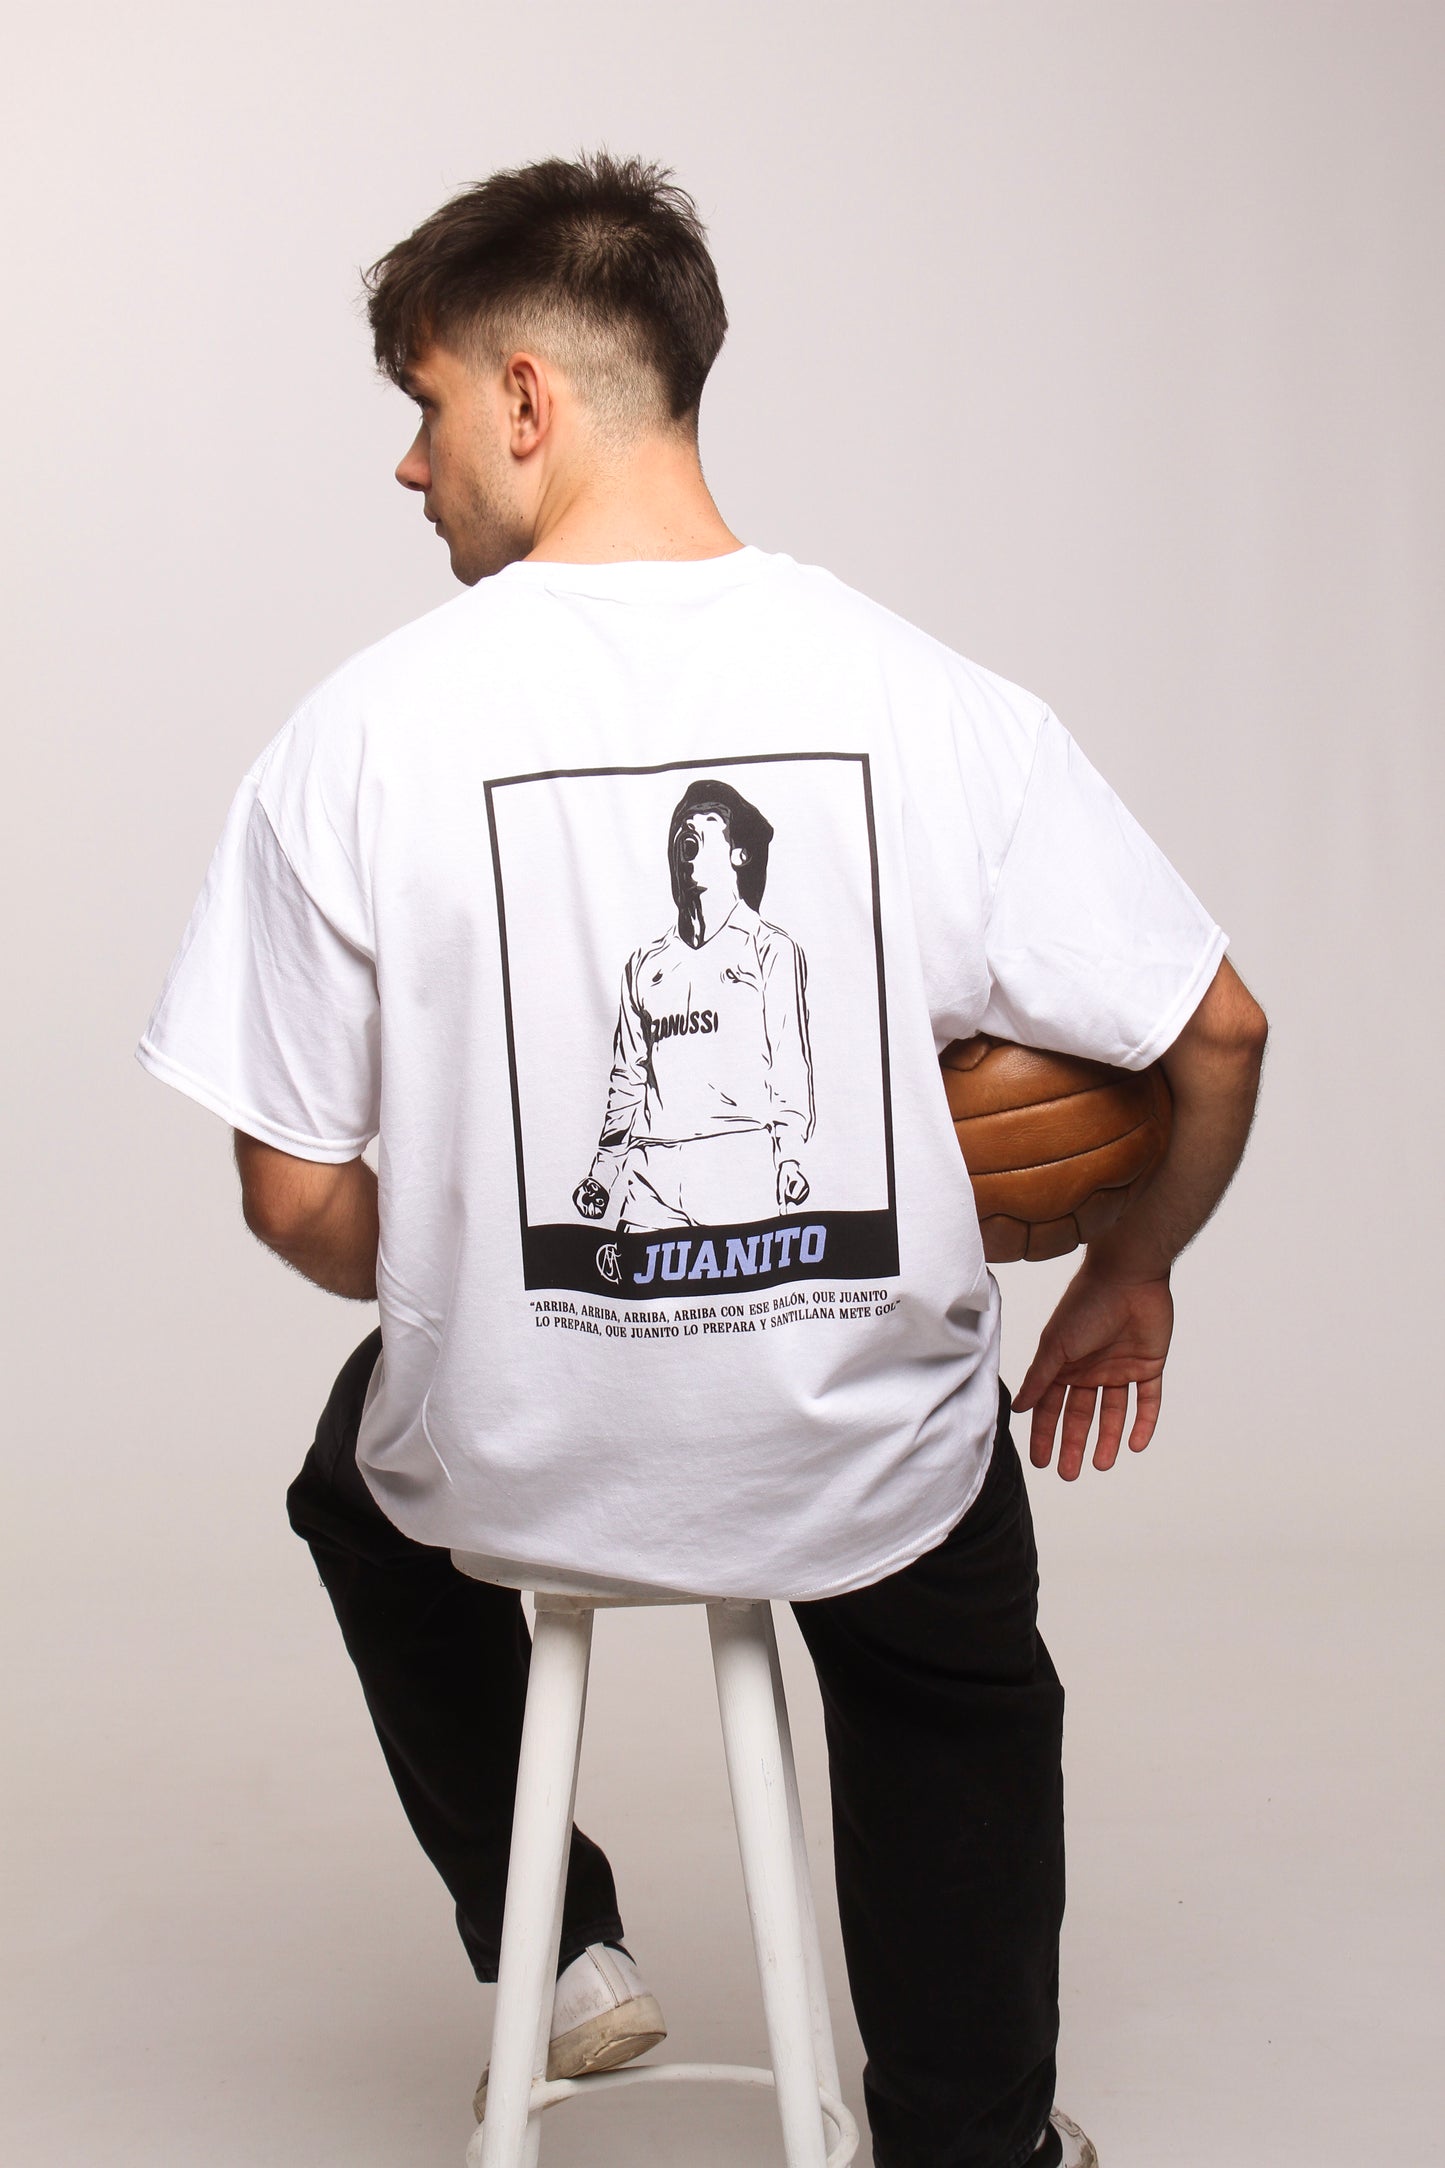 "JUANITO" T-shirt by Juanito Gómez